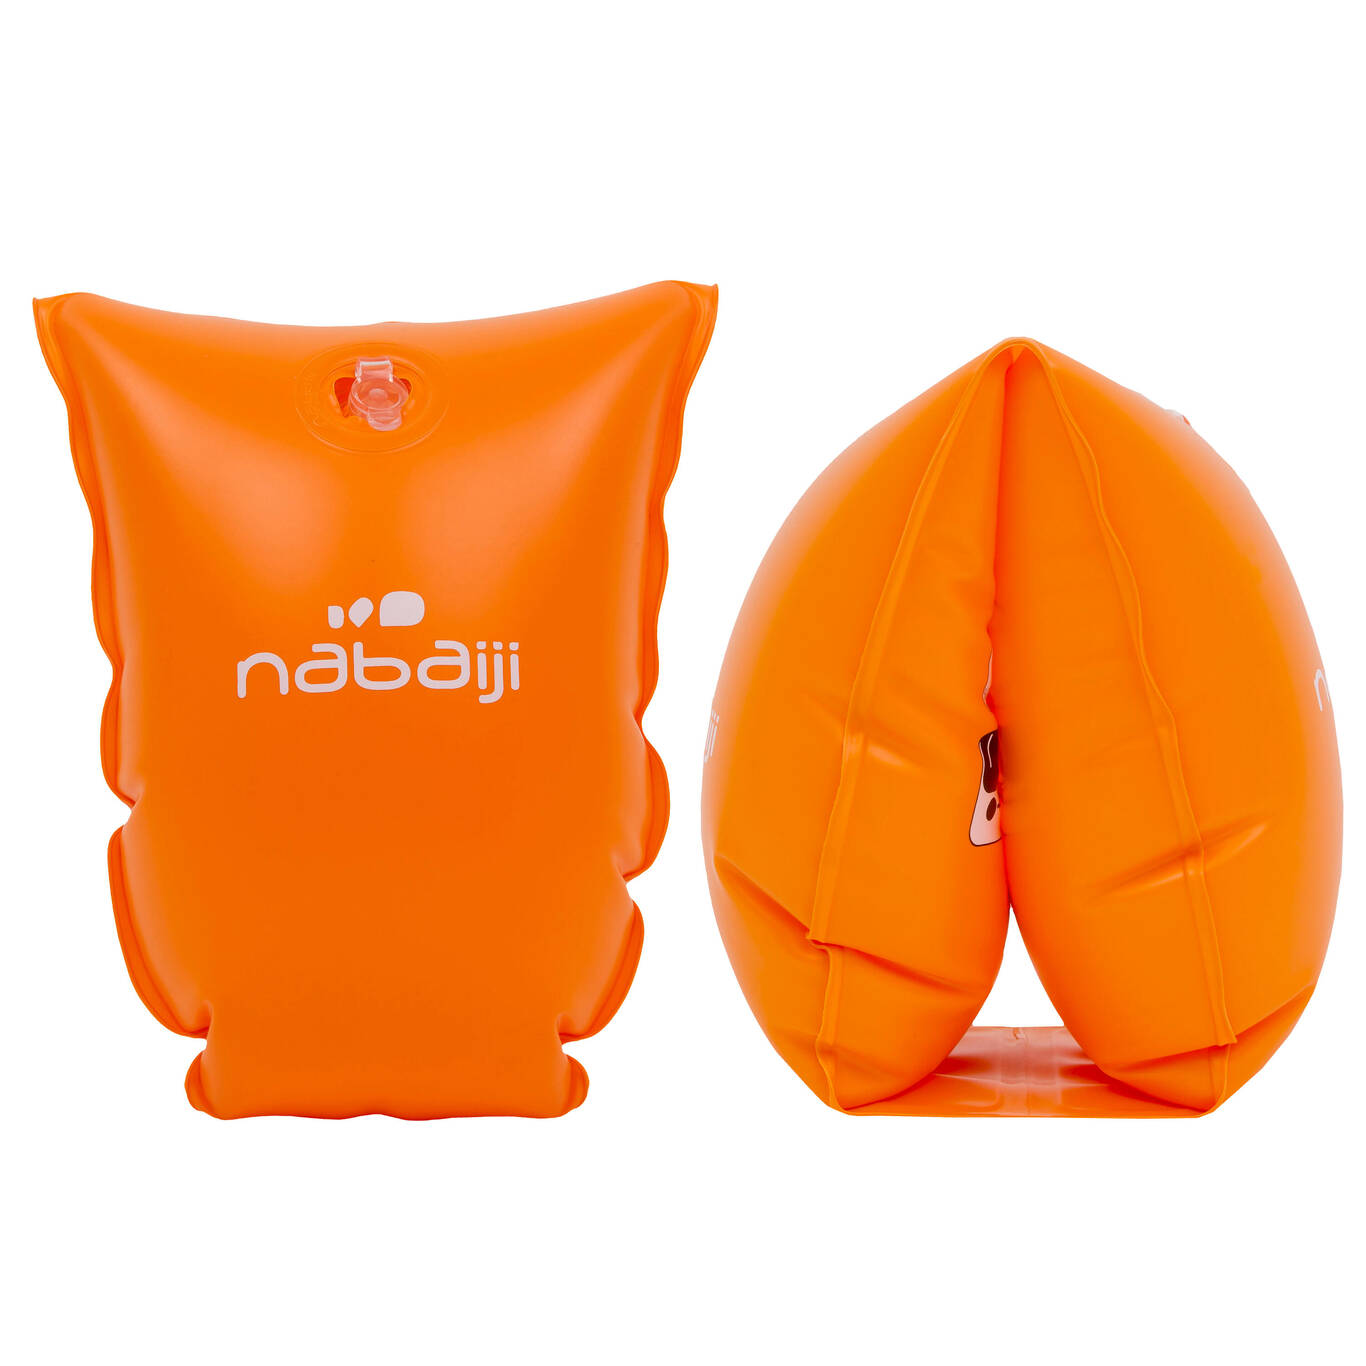 Kids' Swimming Armbands orange 30-60 kg